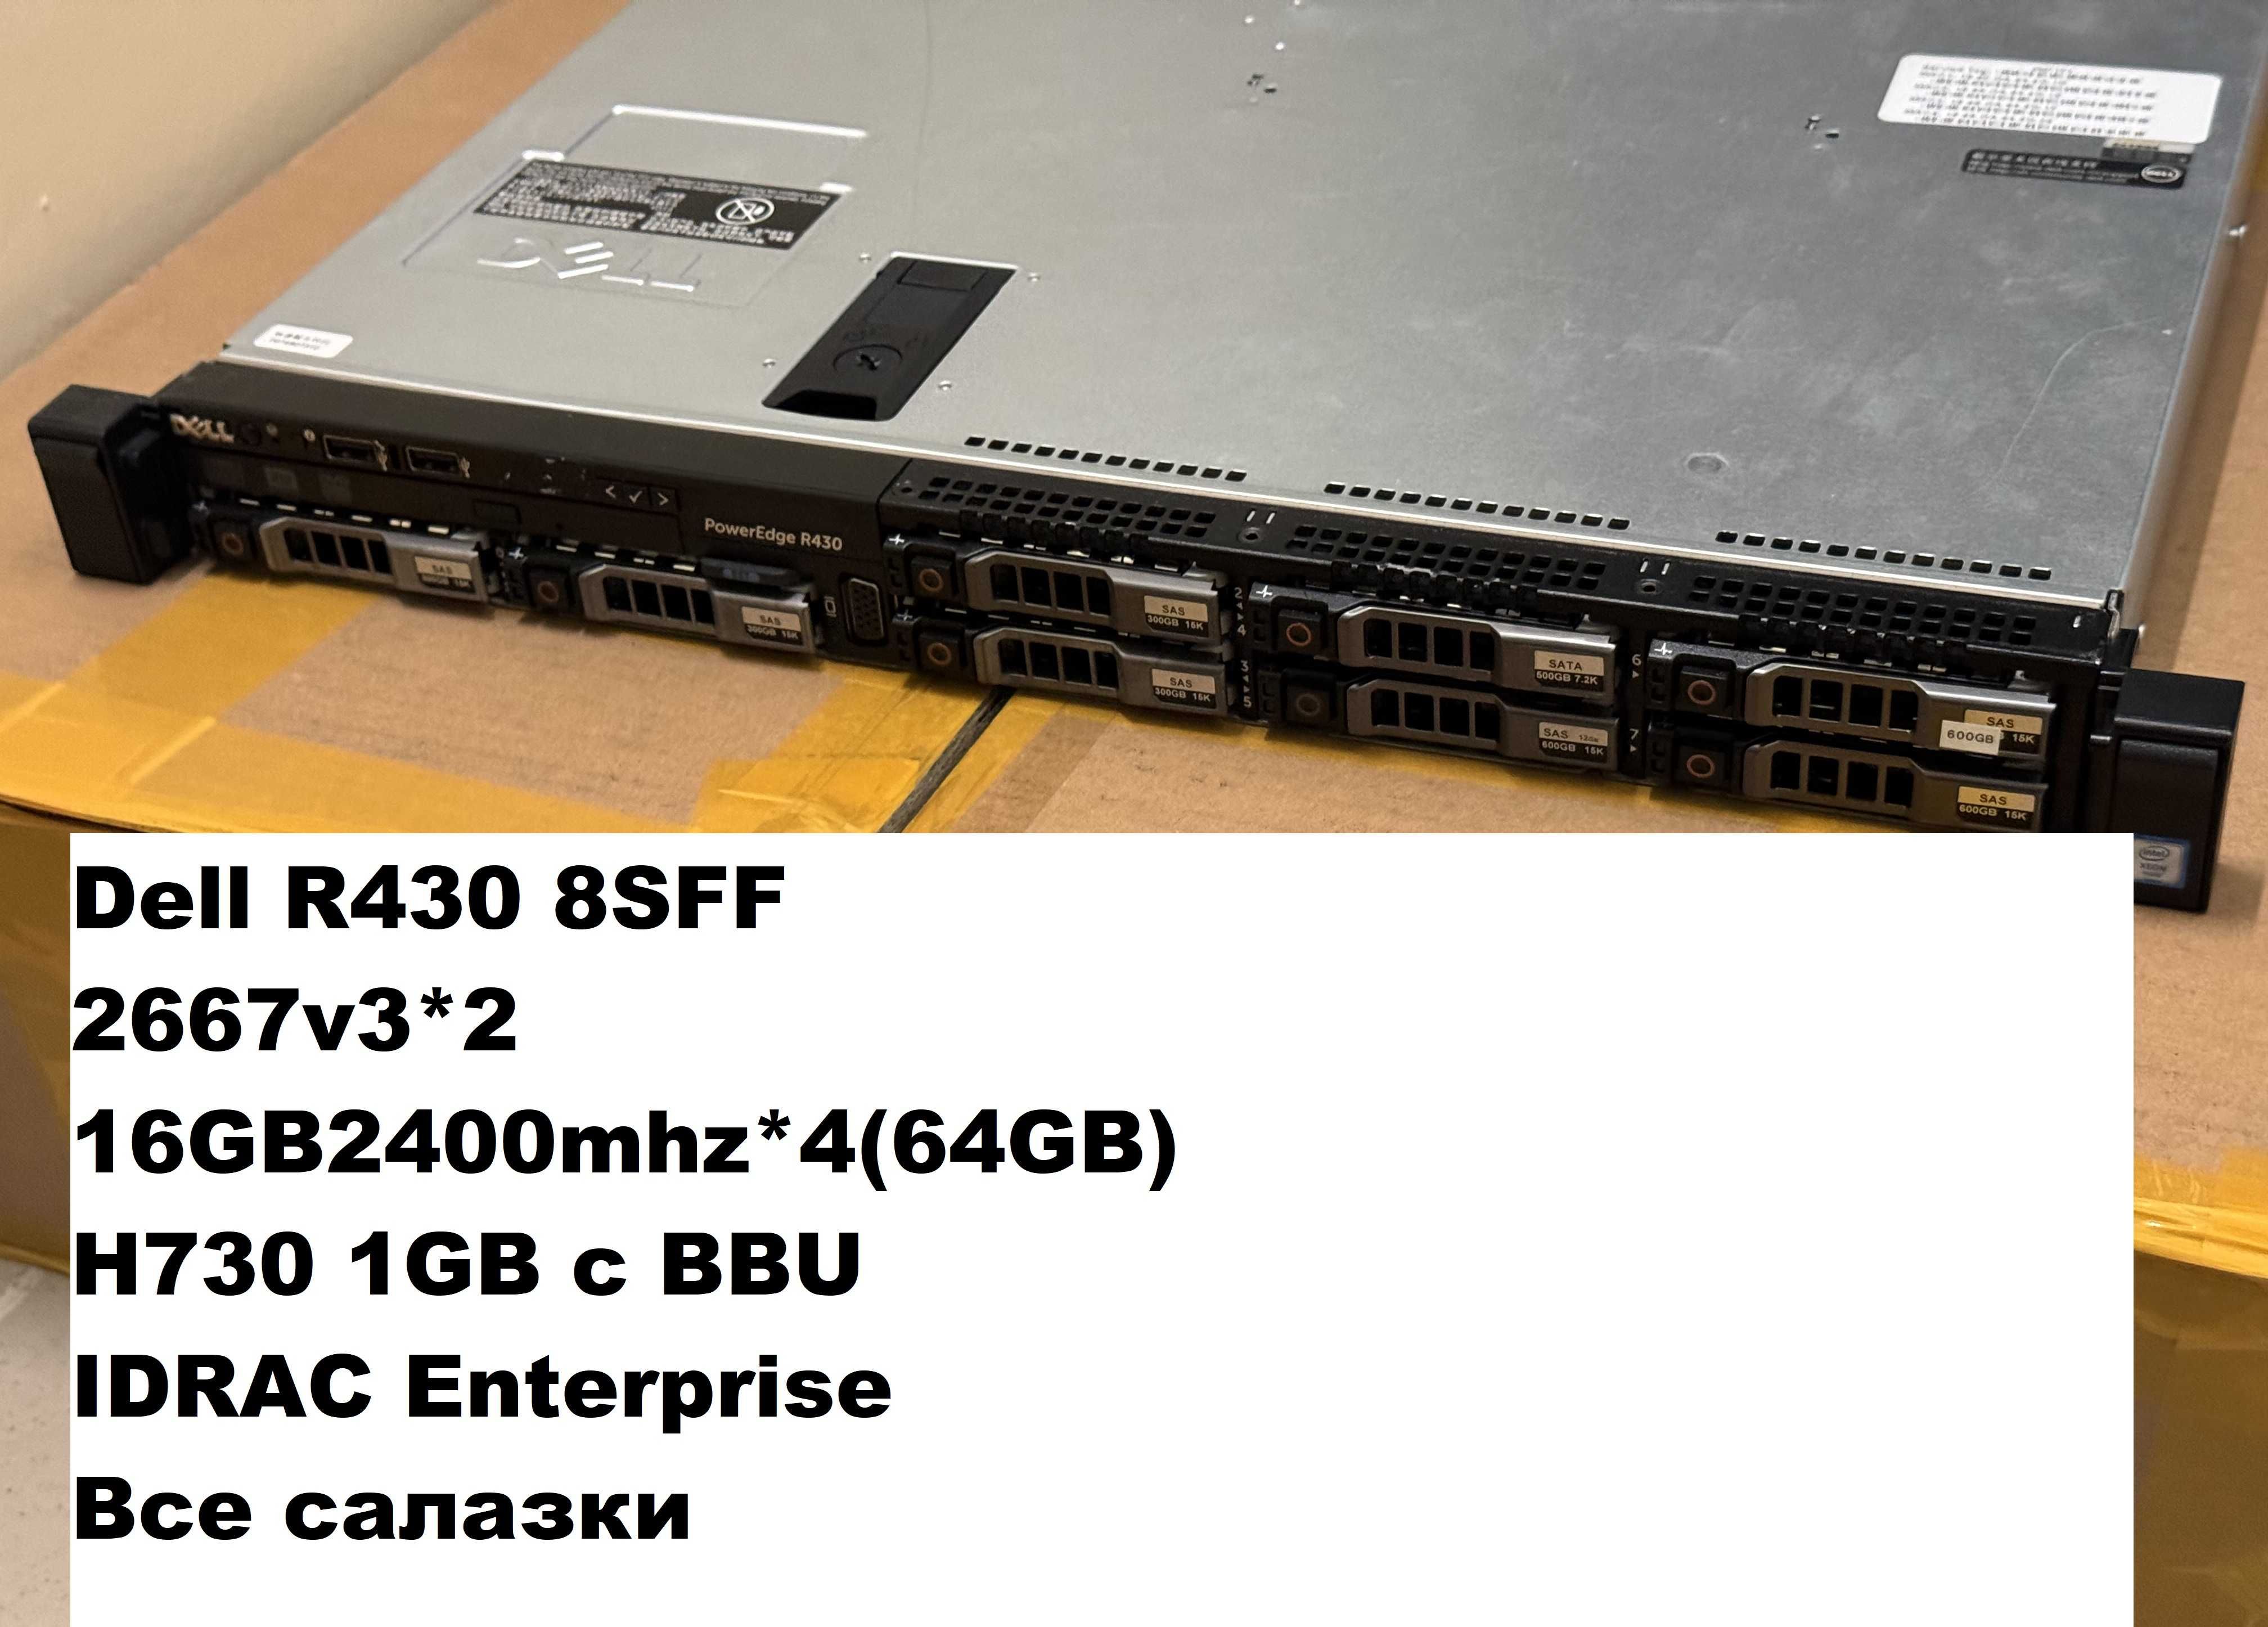 Dell r430 8sff/2667v3*2/64GB/550w*2/H730 1GB c BBU/Все салазки